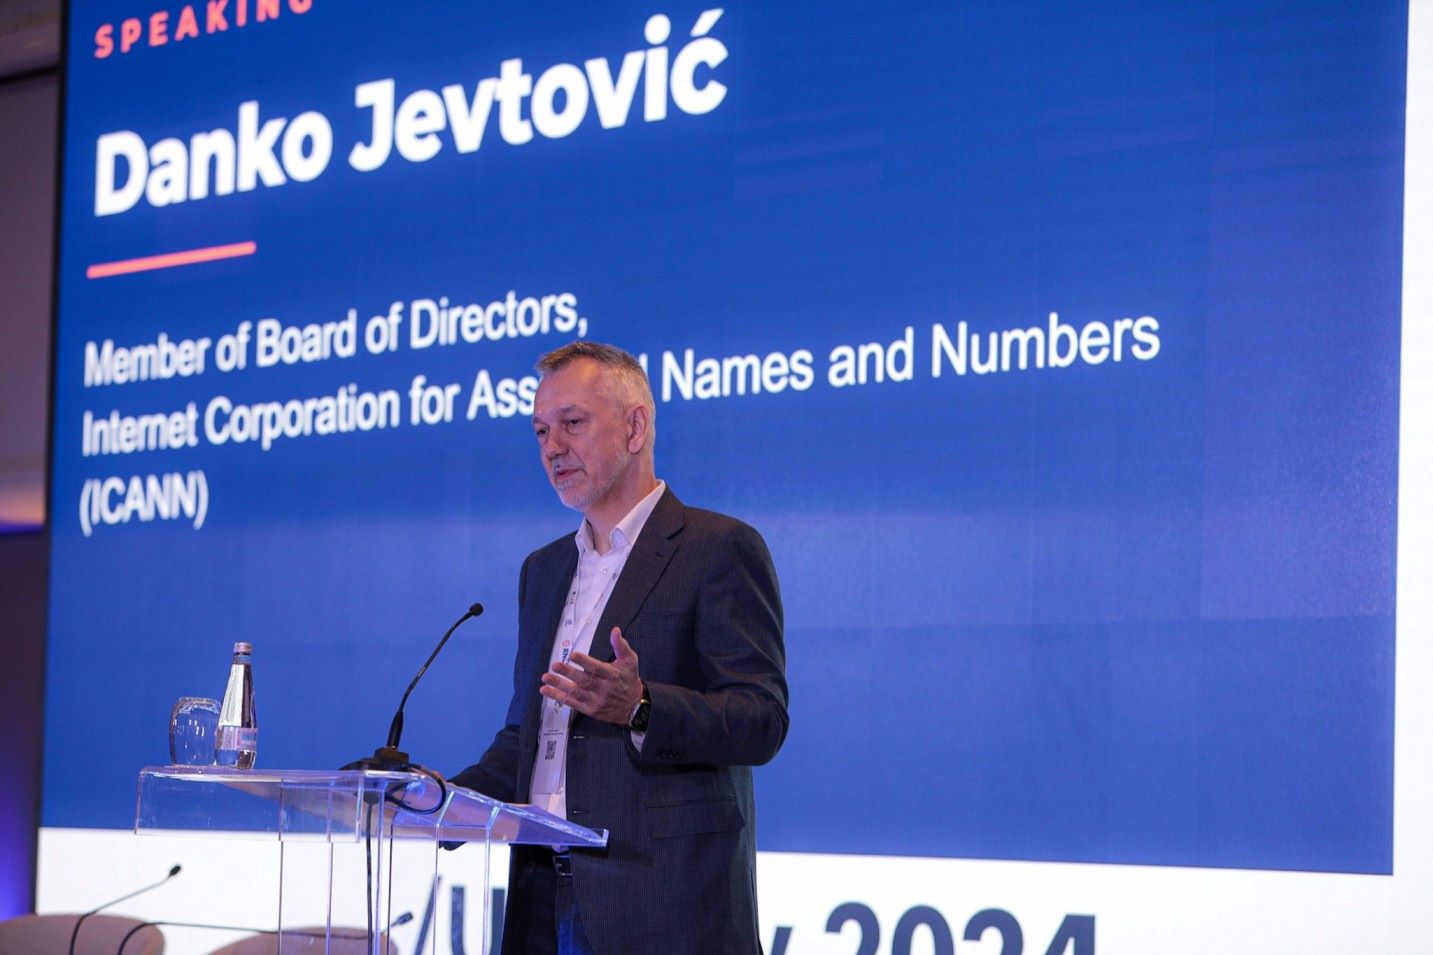 Danko Jevtović, potpredsednik Borda direktora ICANN-a, istakao je značaj bliske i sistemske saradnje između UASG-a i ICANN-a